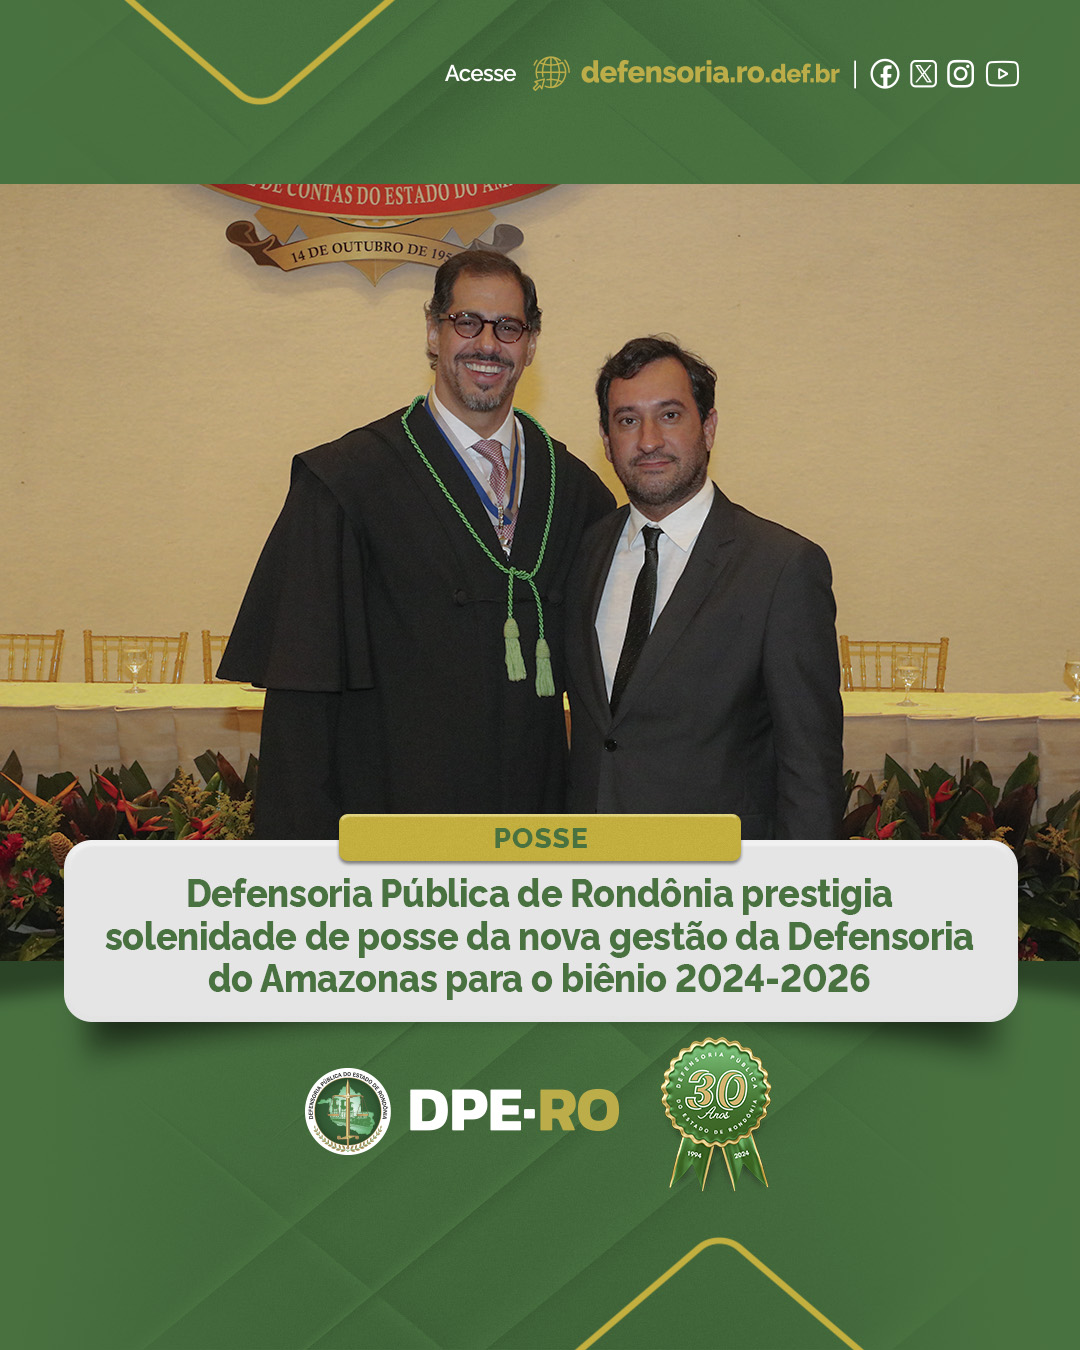 Defensoria Pública de Rondônia prestigia solenidade de posse da nova gestão da Defensoria do Amazonas para o biênio 2024-2026